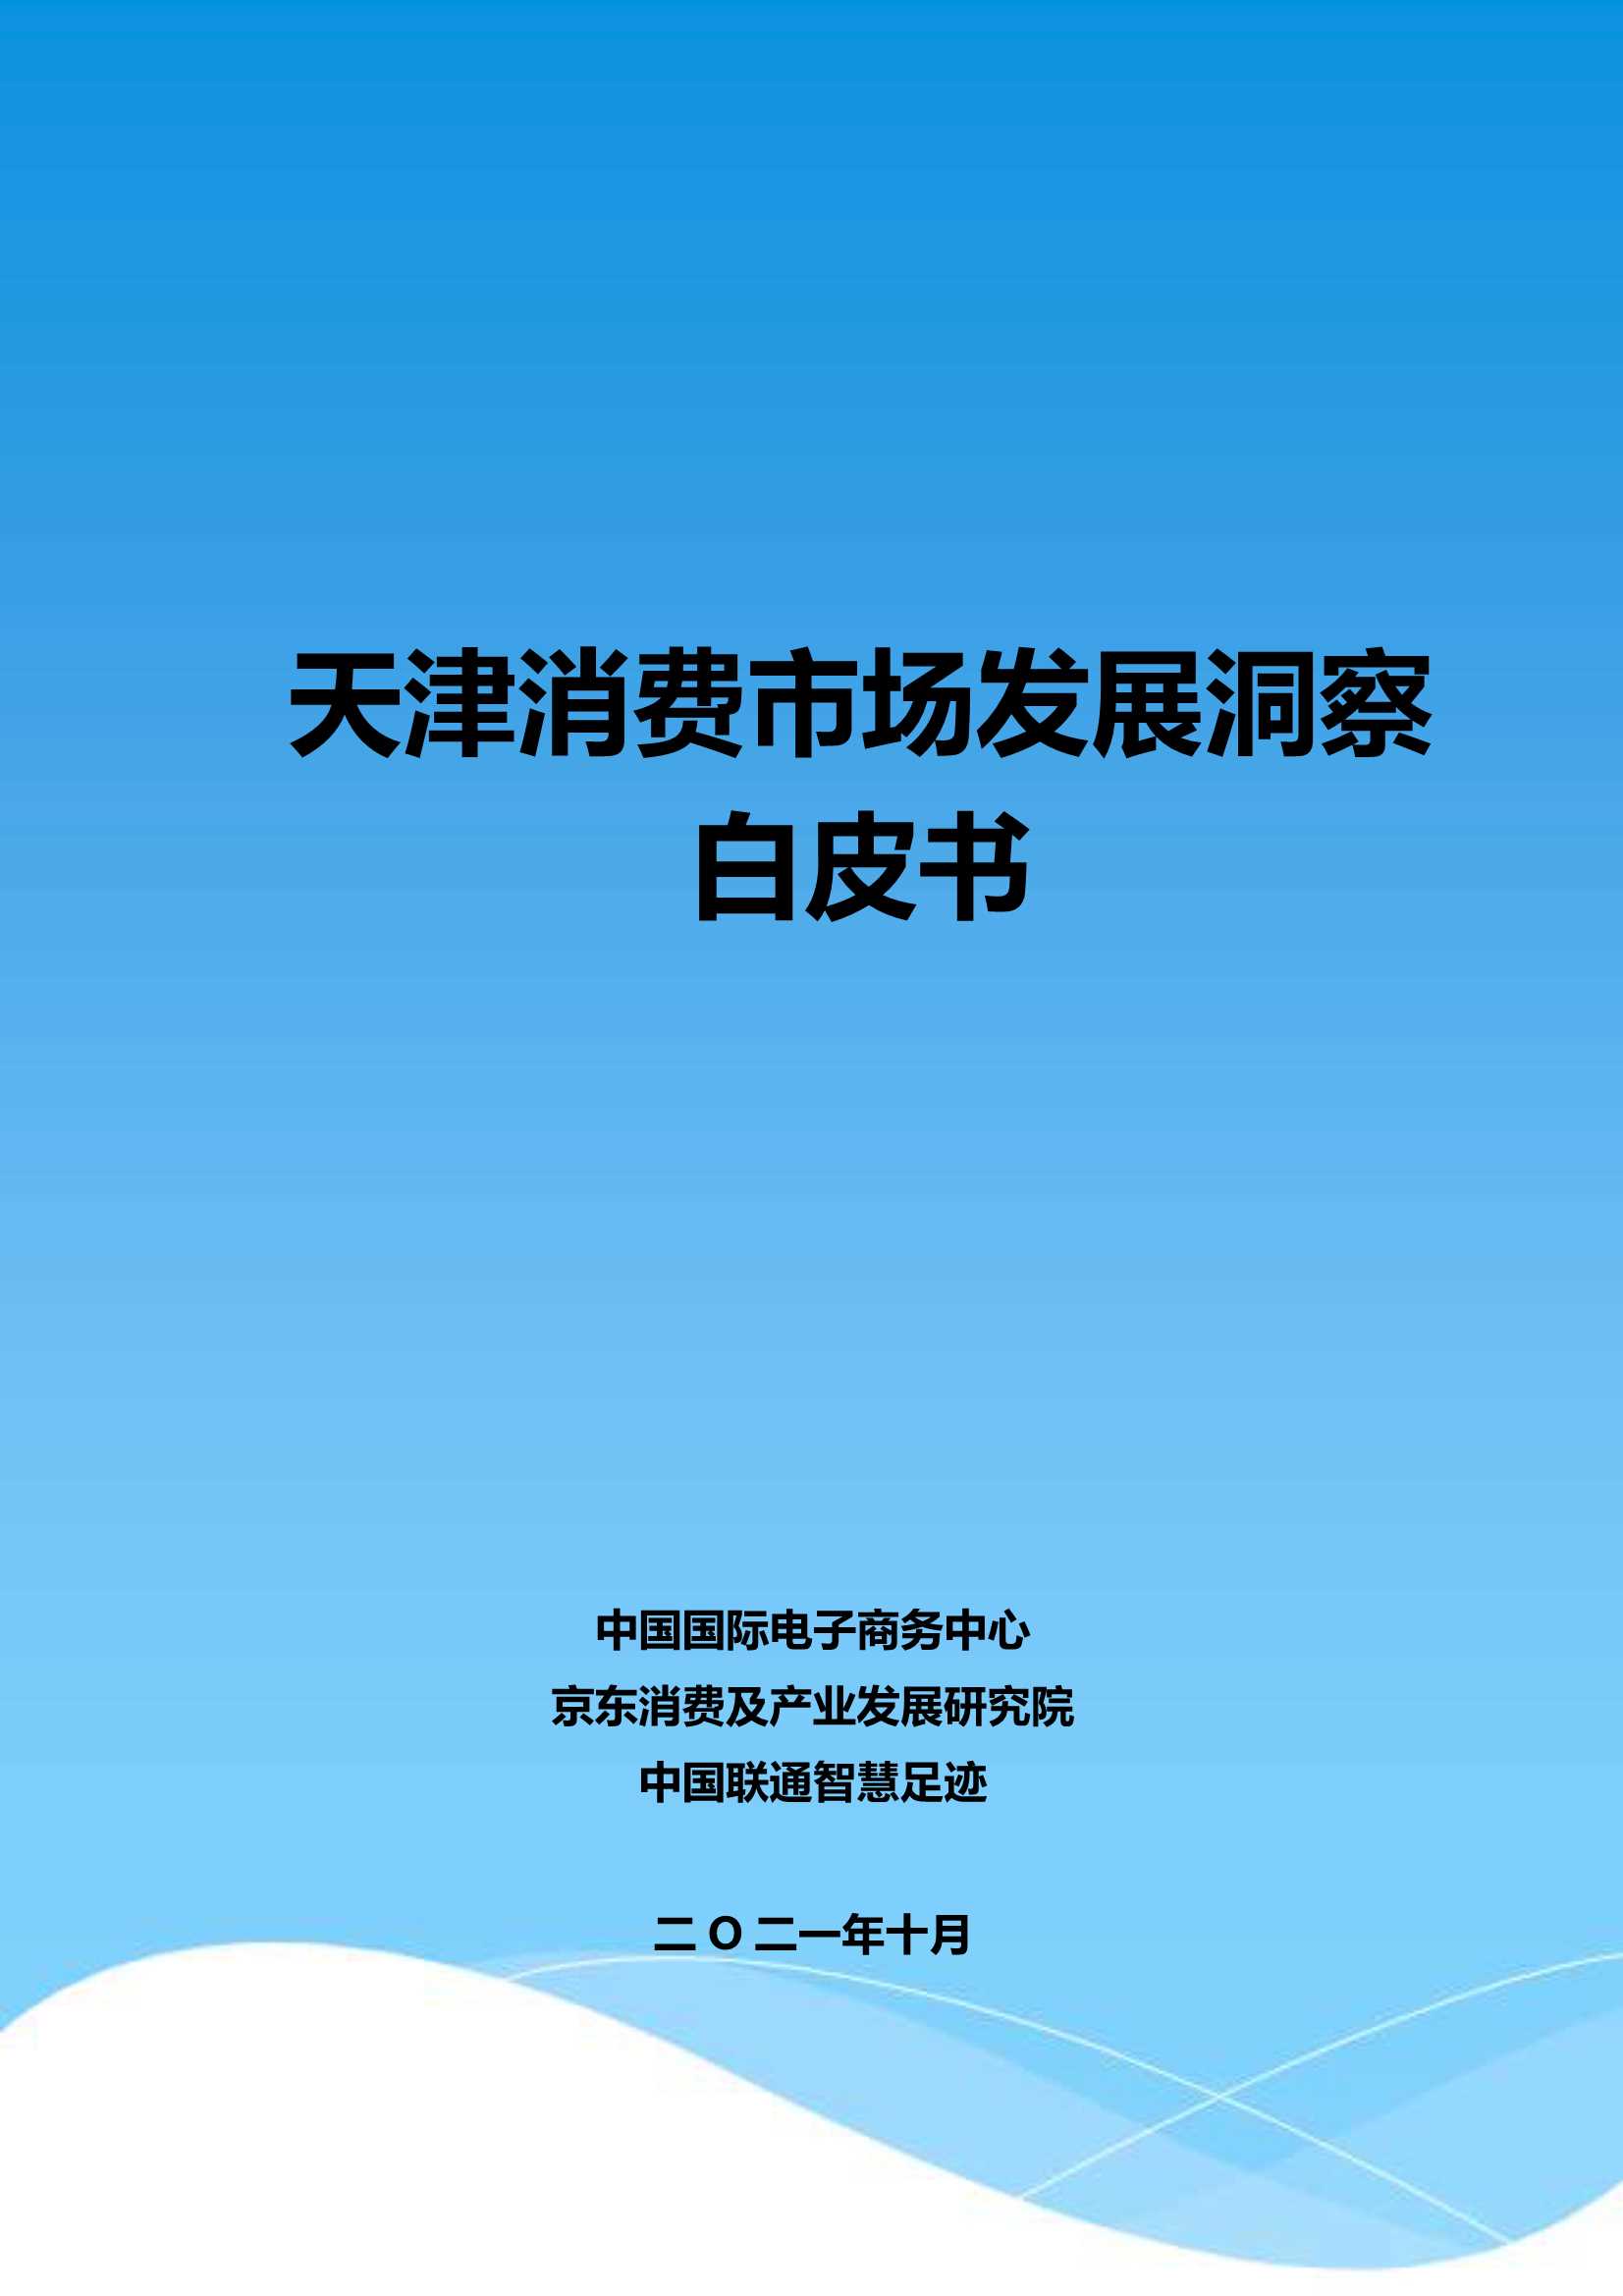 中国国际电子商务中心&京东-天津消费市场发展洞察白皮书-2021.10-62页